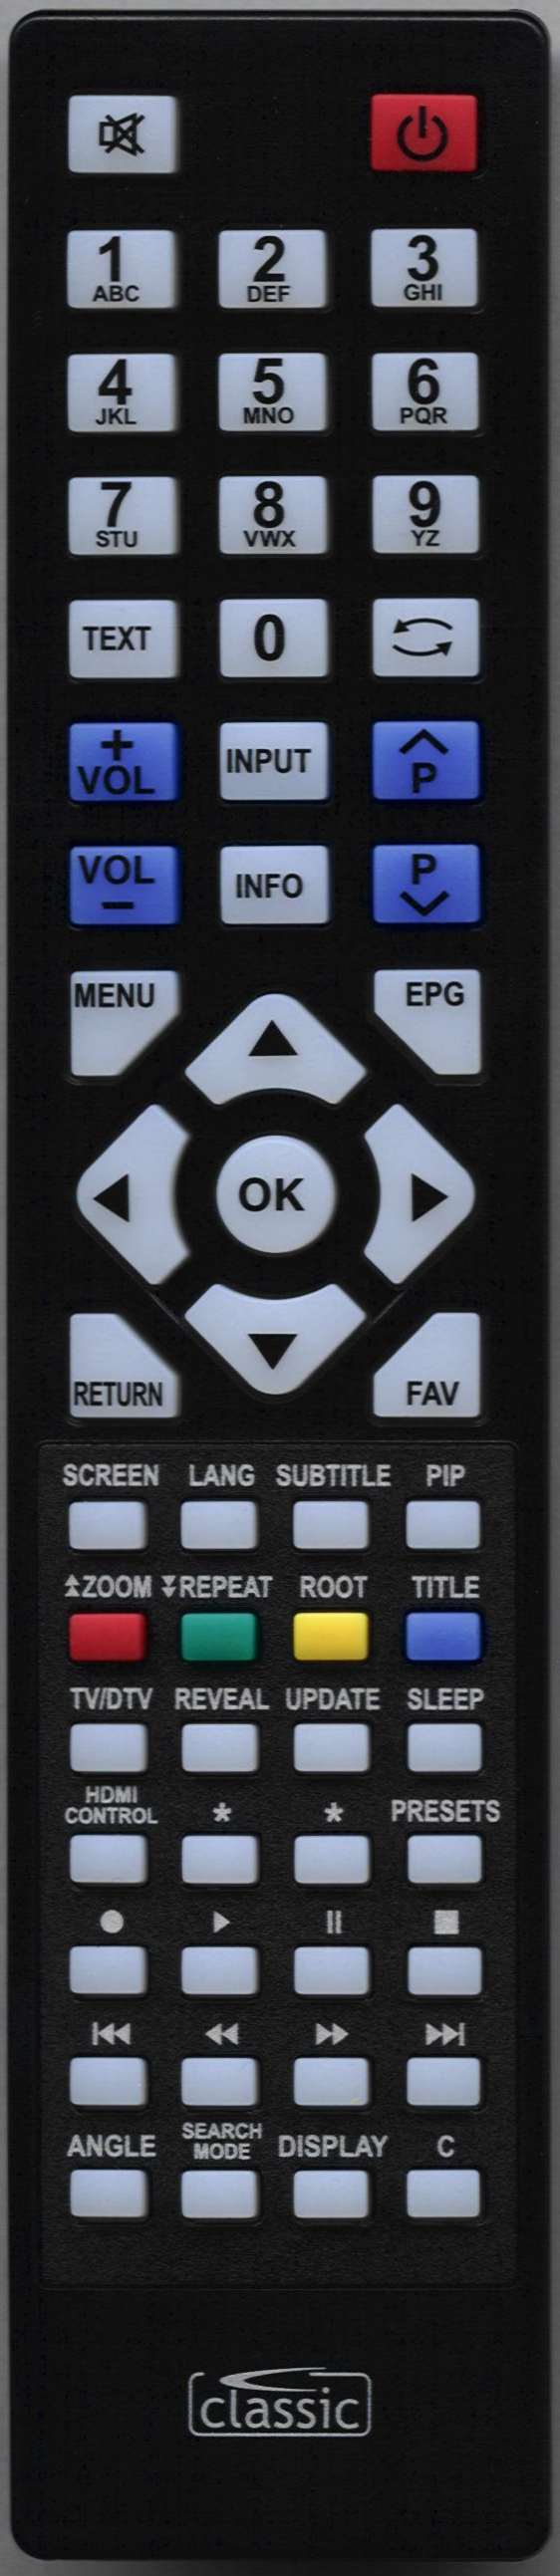 LUXOR 19822WHDDVD Remote Control Alternative